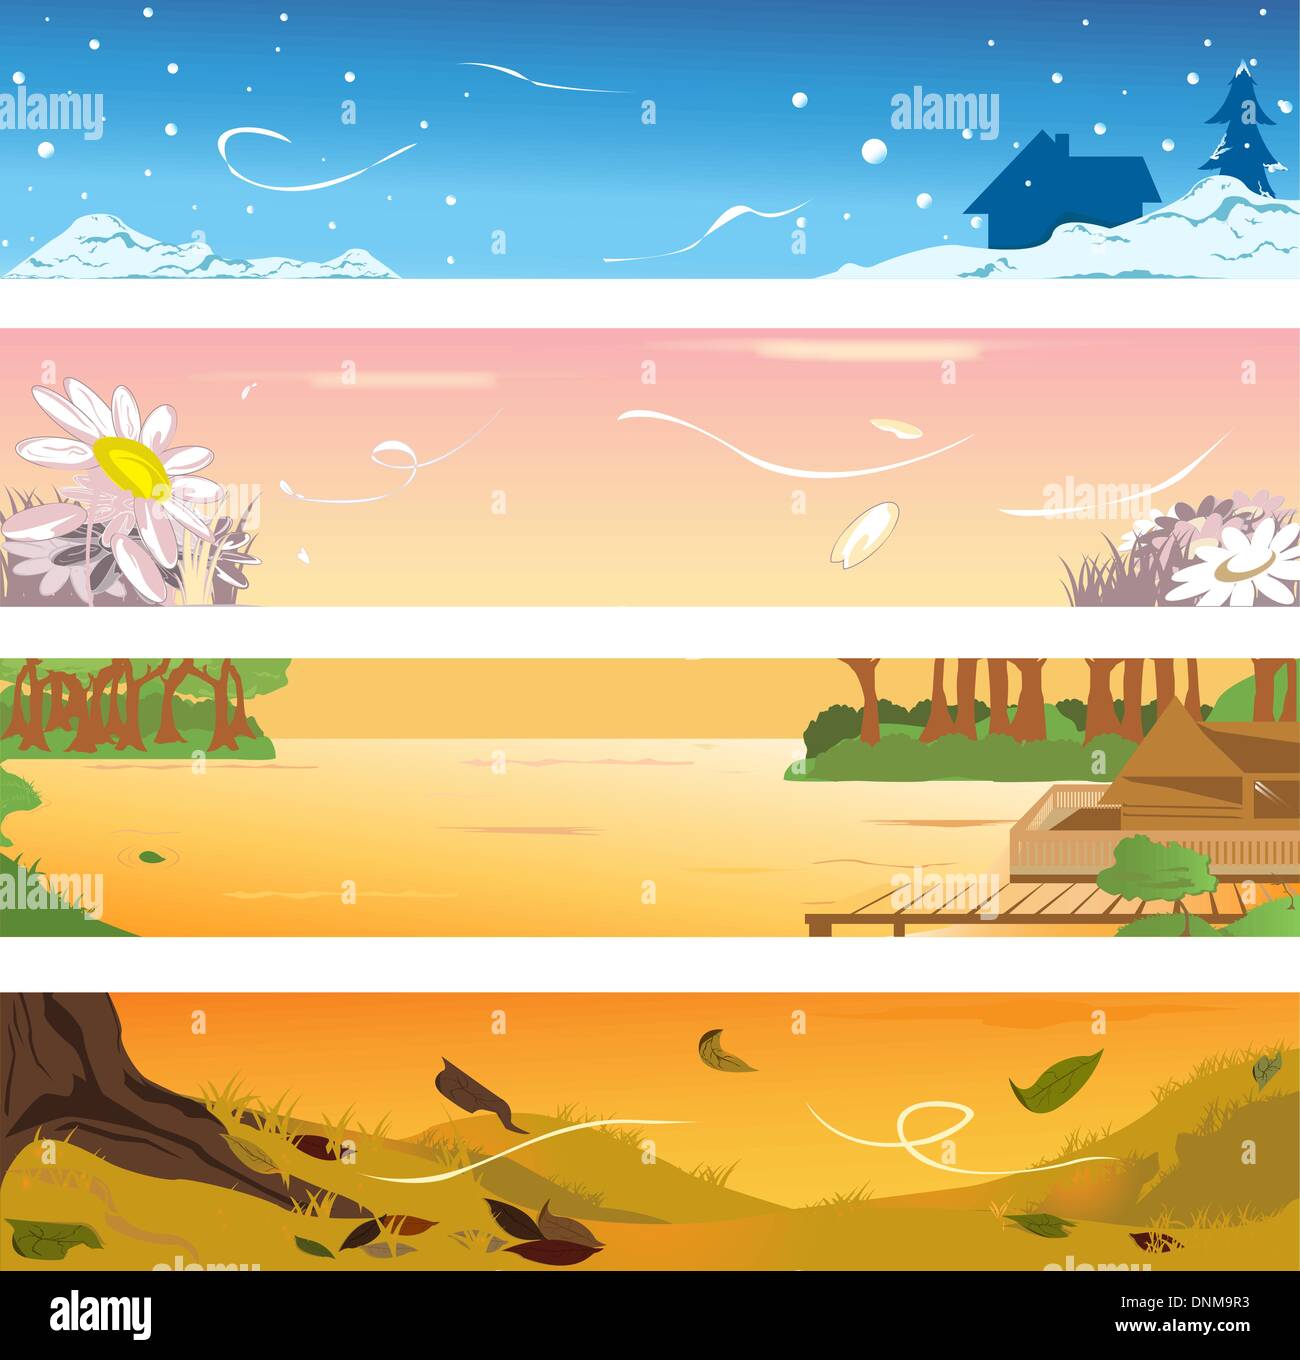 Illustrazioni vettoriali di banner di quattro diverse stagioni Illustrazione Vettoriale